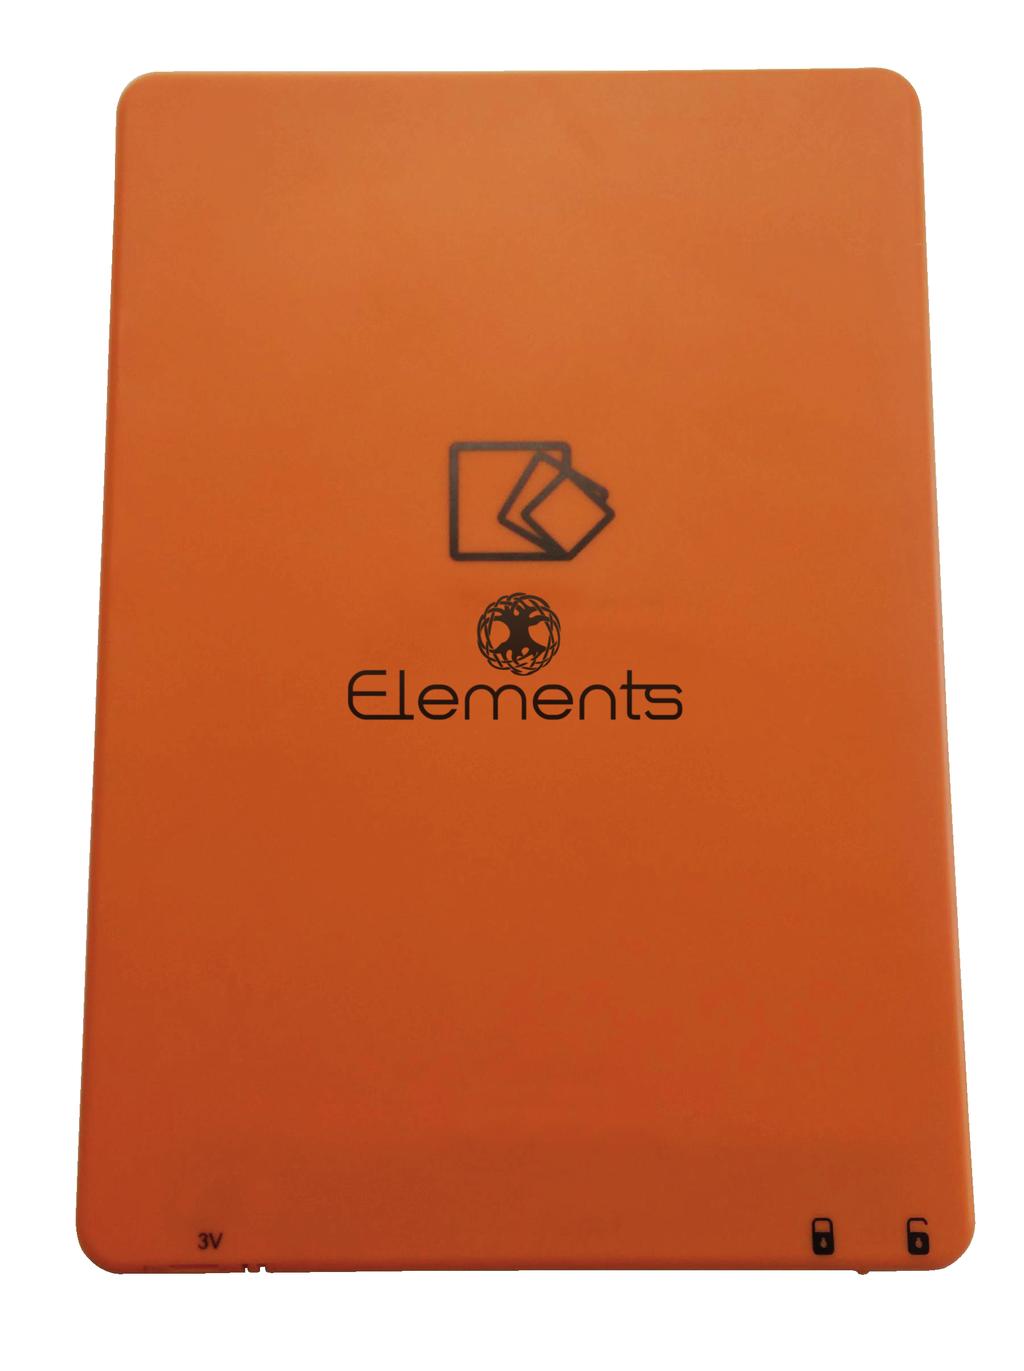 1. Bevezetés Köszönjük, hogy megvásárolta az Elements Magic Board digitális táblát. Kérjük, használat előtt ﬁgyelmesen olvassa el a használati útmutatót. 1.